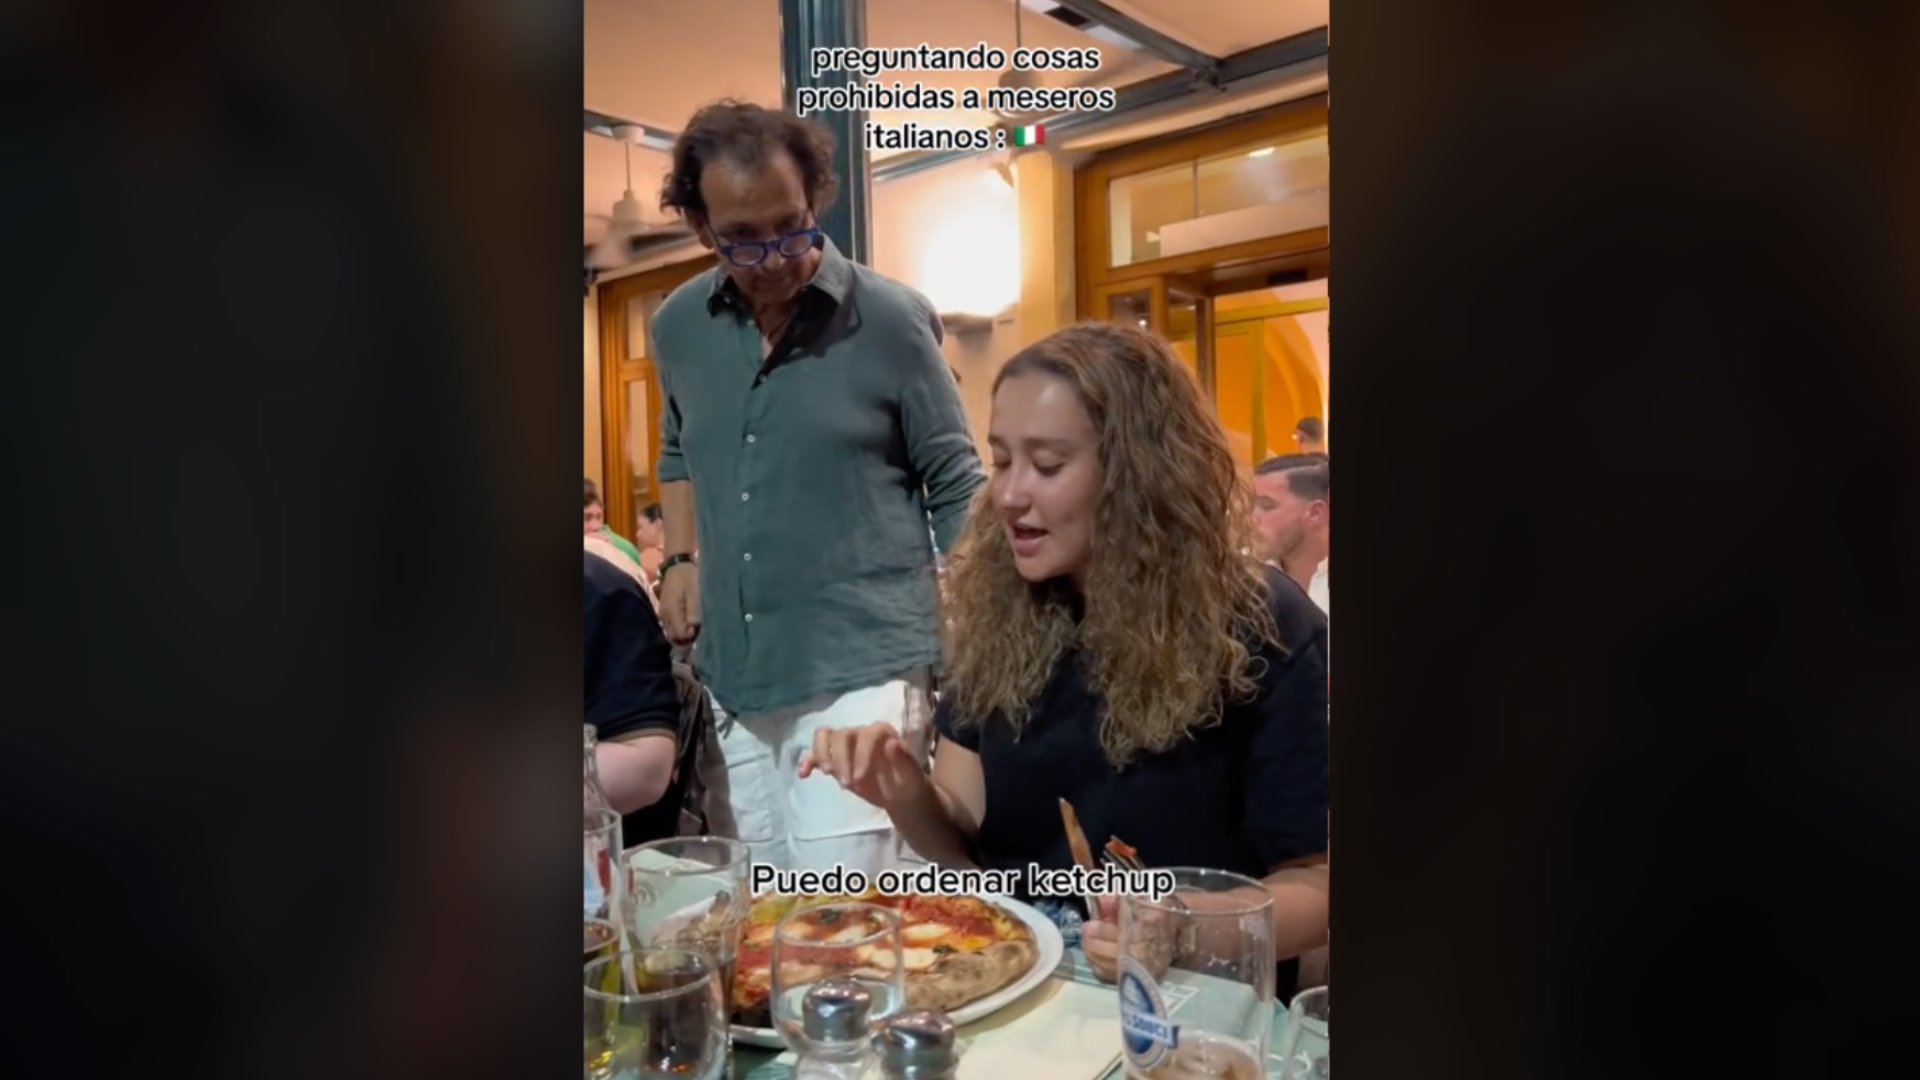 Una turista li demana quètxup per a la pizza a un cambrer italià i la seva reacció es torna viral